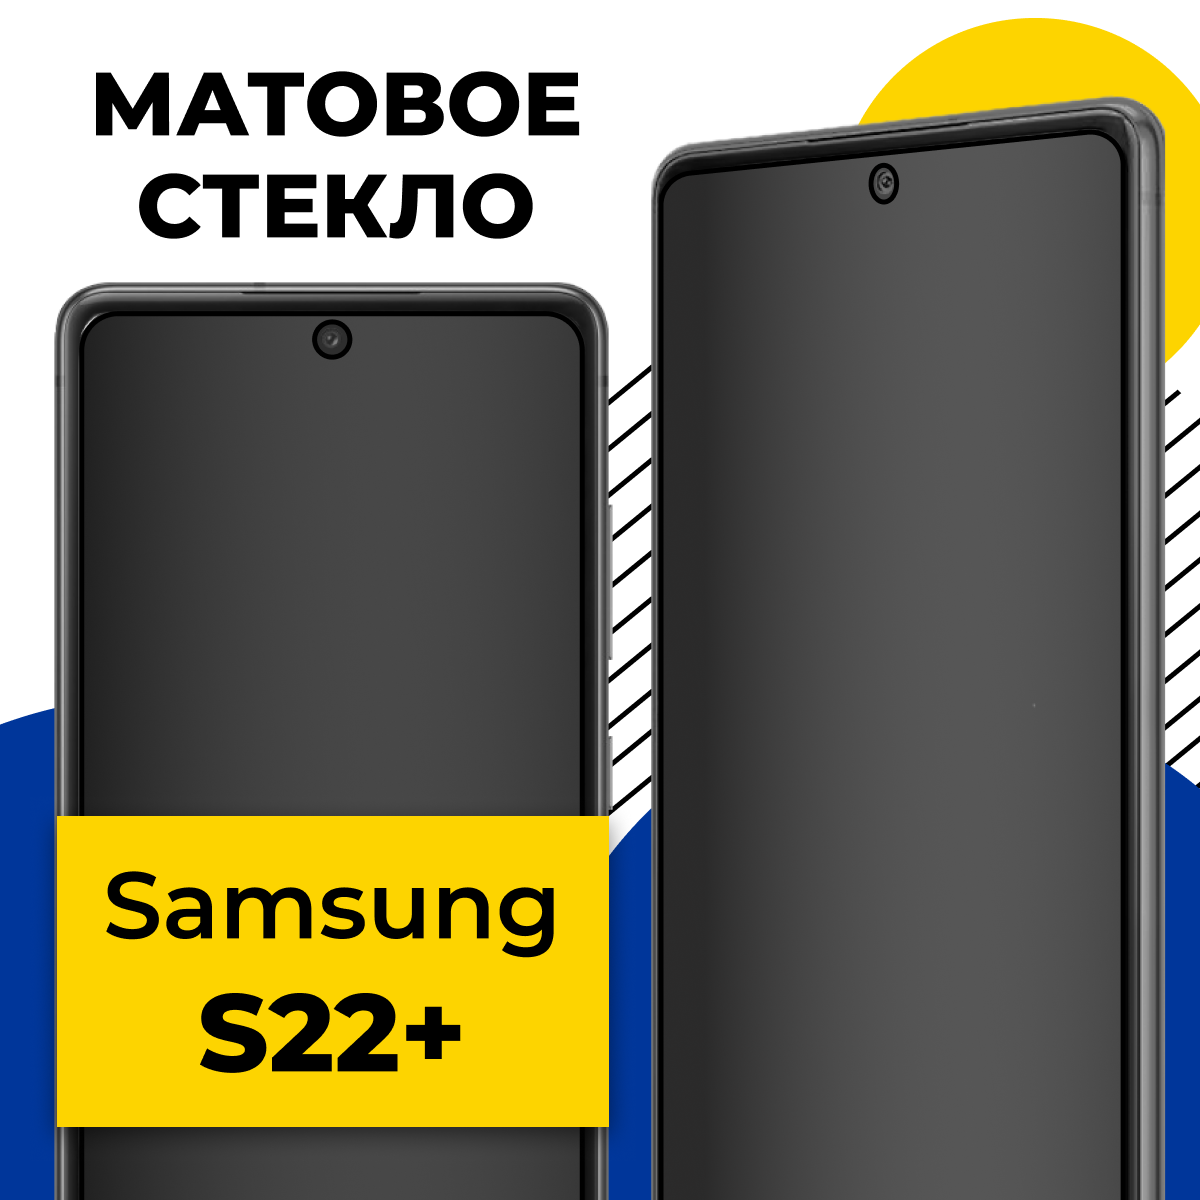 Матовое защитное стекло для телефона Samsung Galaxy S22 Plus / Противоударное стекло 2.5D на смартфон Самсунг Галакси С22 Плюс с олеофобным покрытием